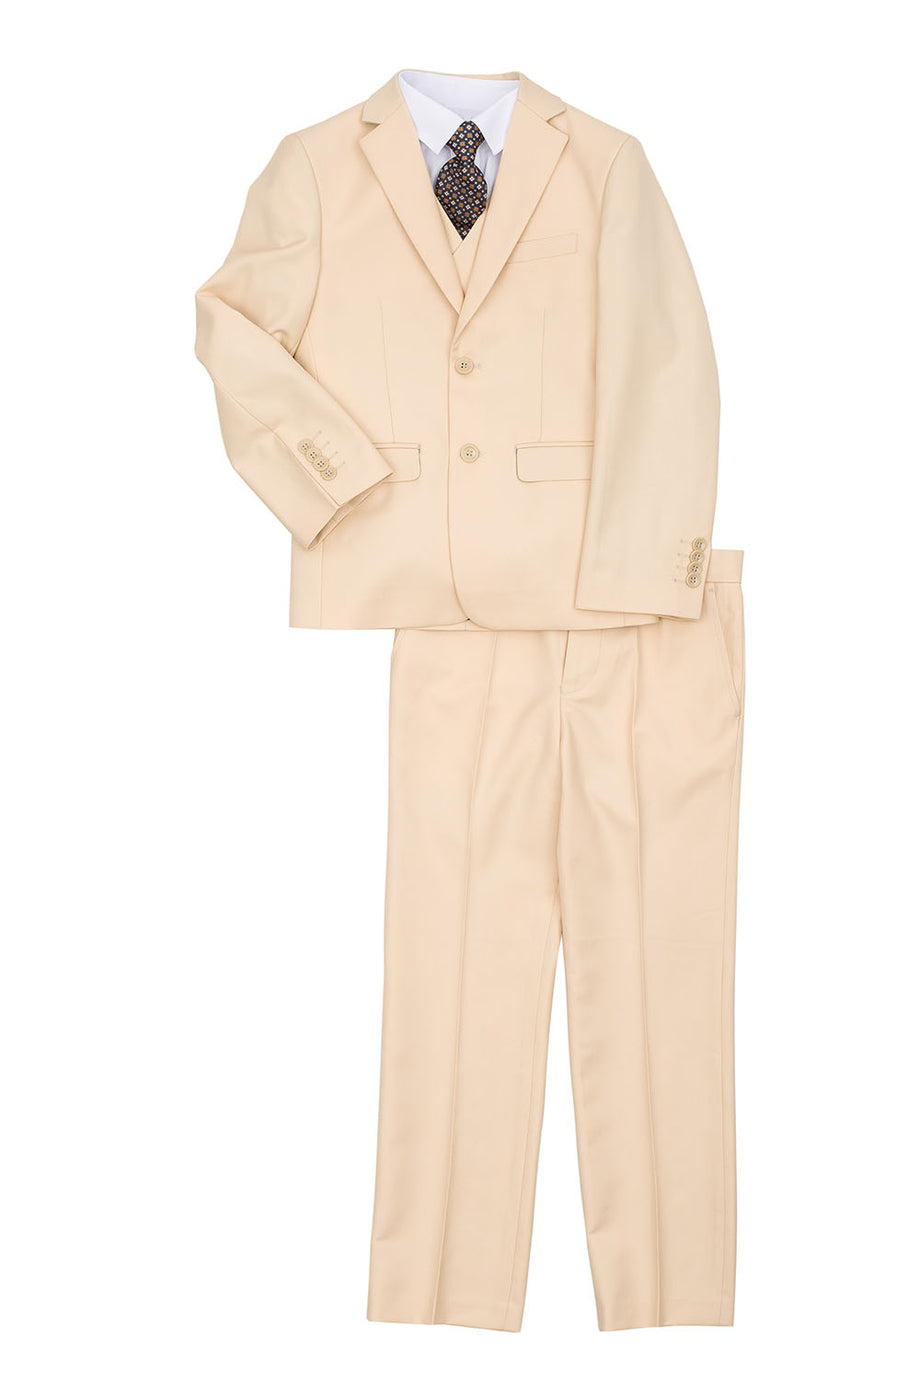 "Austin" Kids Peach 5-Piece Suit (Geoffrey Beene / AXNY)